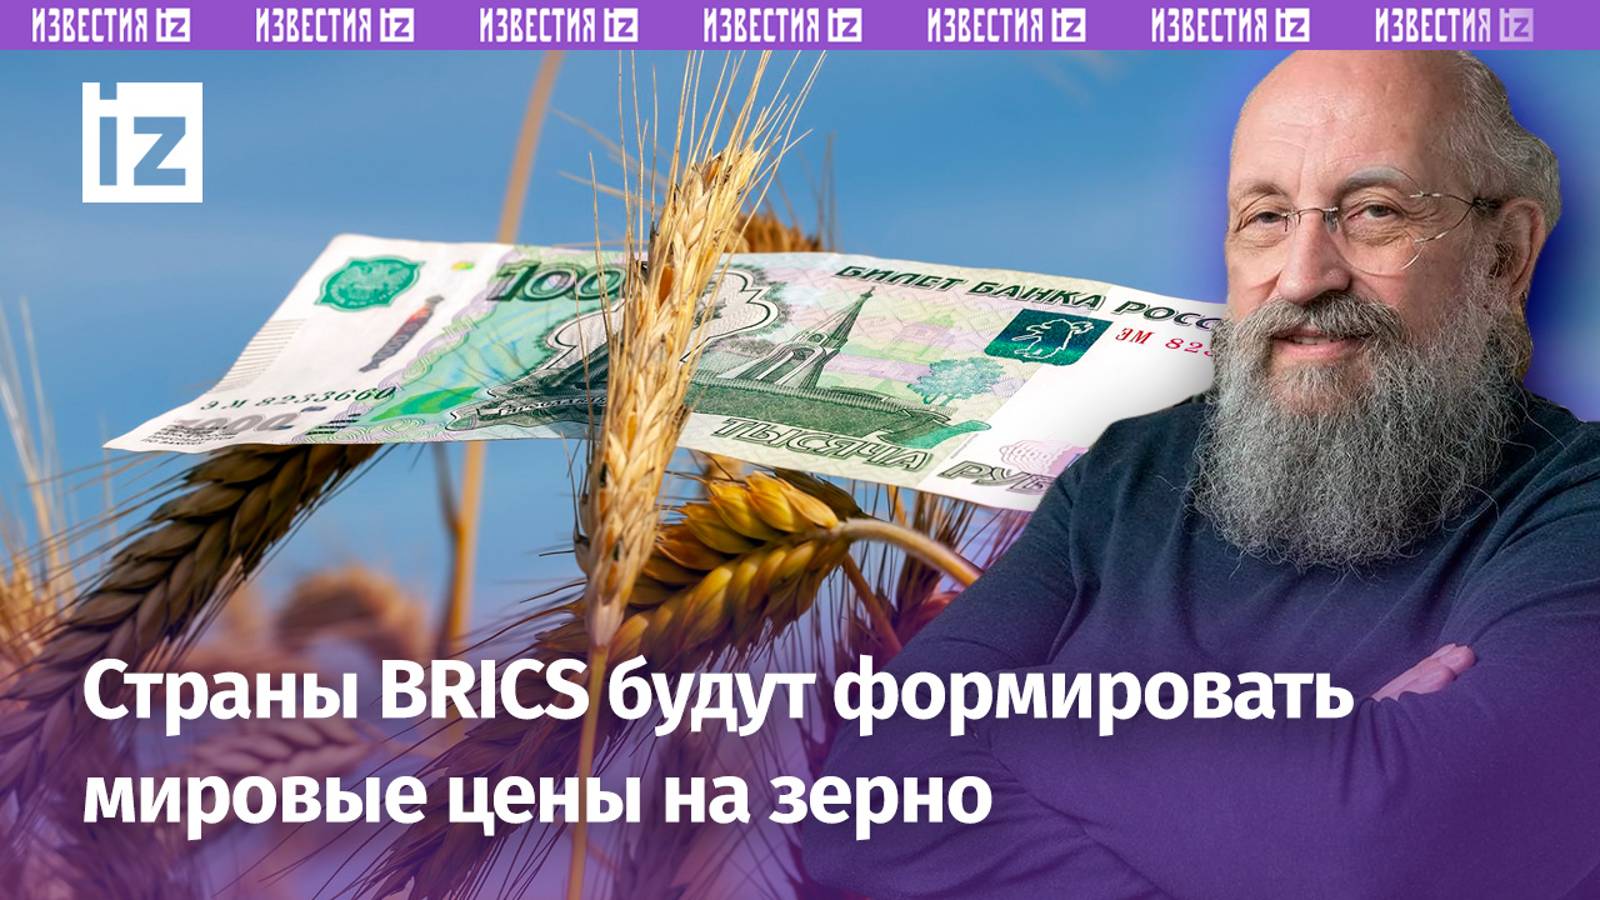 РФ и союзники будут формировать мировые цены на зерно: новая биржа БРИКС / Открытым текстом